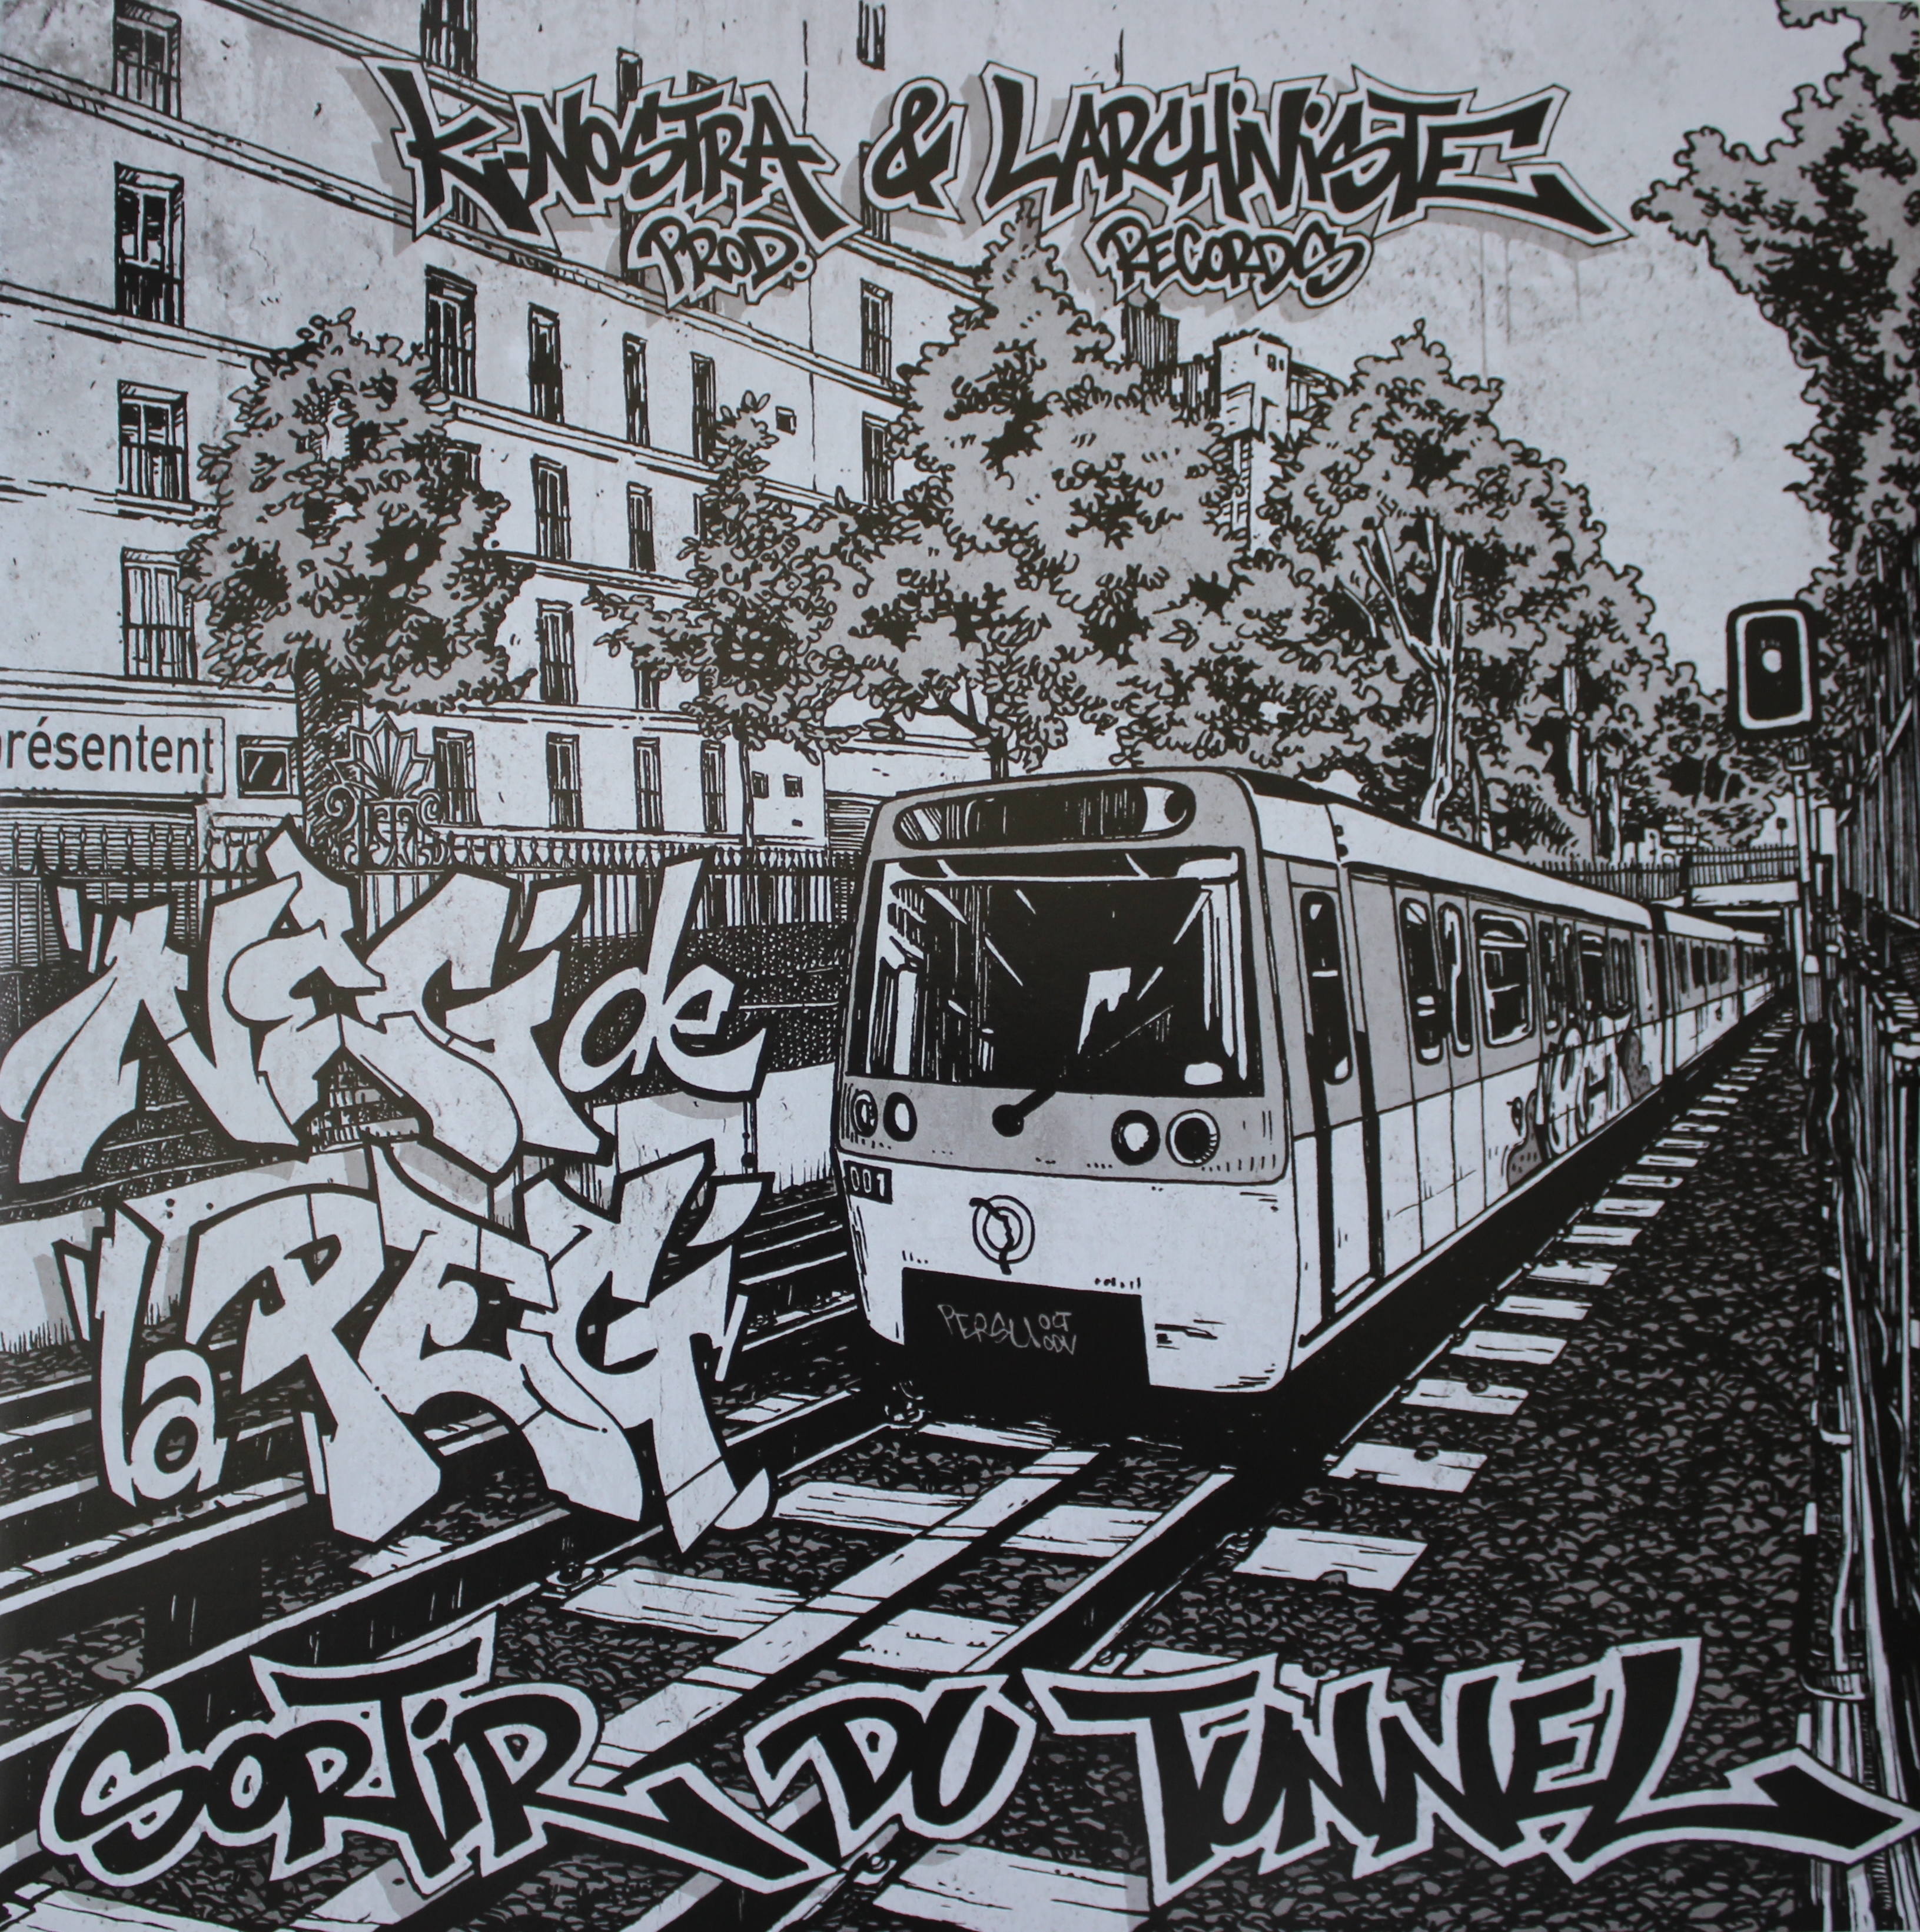 Album Cd "Neg de la peg - Sortir du tunnel" de sur Scredboutique.com